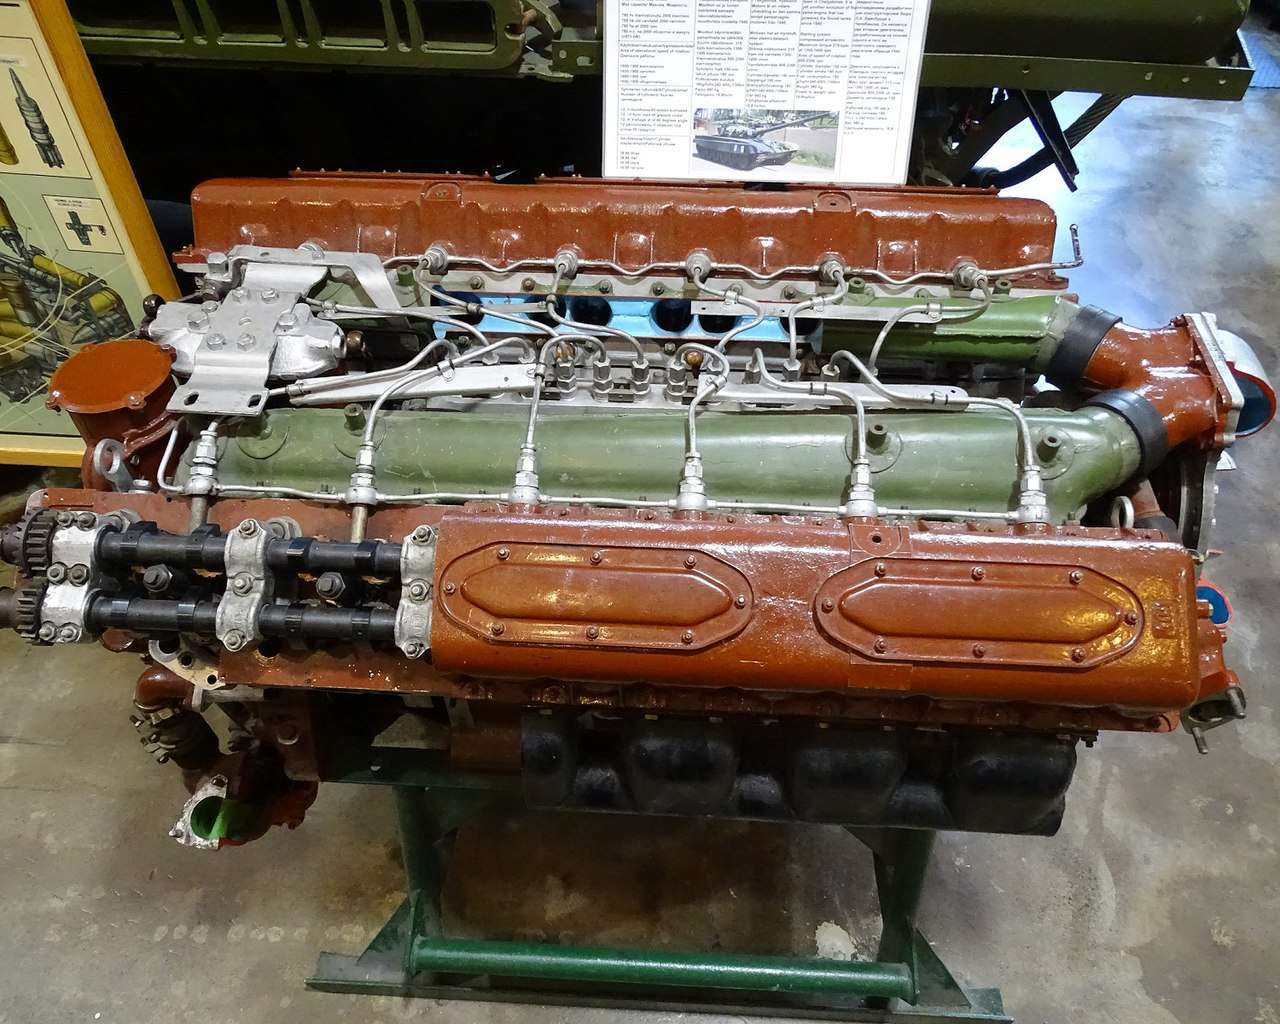 V-46 engine.